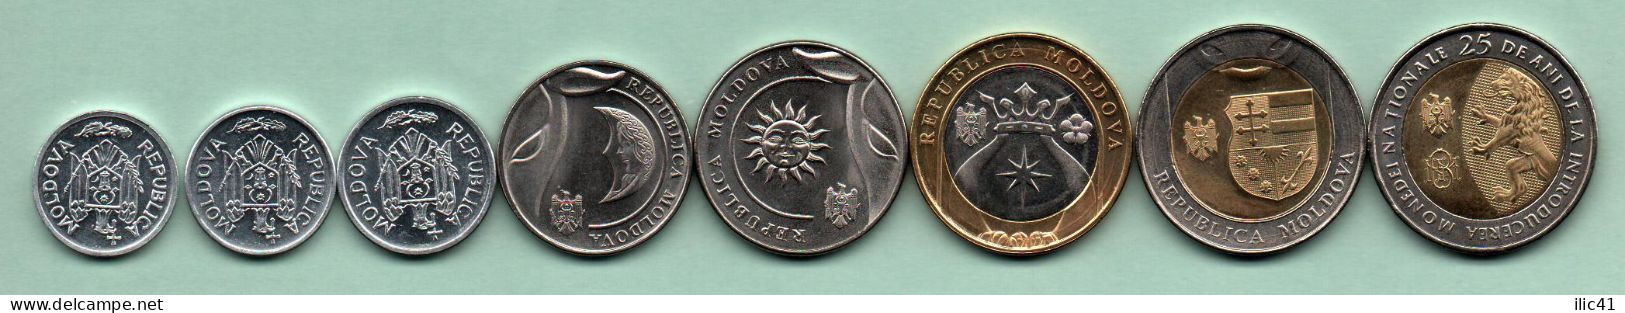 Moldova Moldova  2018  Coins 0.05.0.10.0.25 1; 2; 5; 10; 10 (Anniversary)  UNC - Moldavia